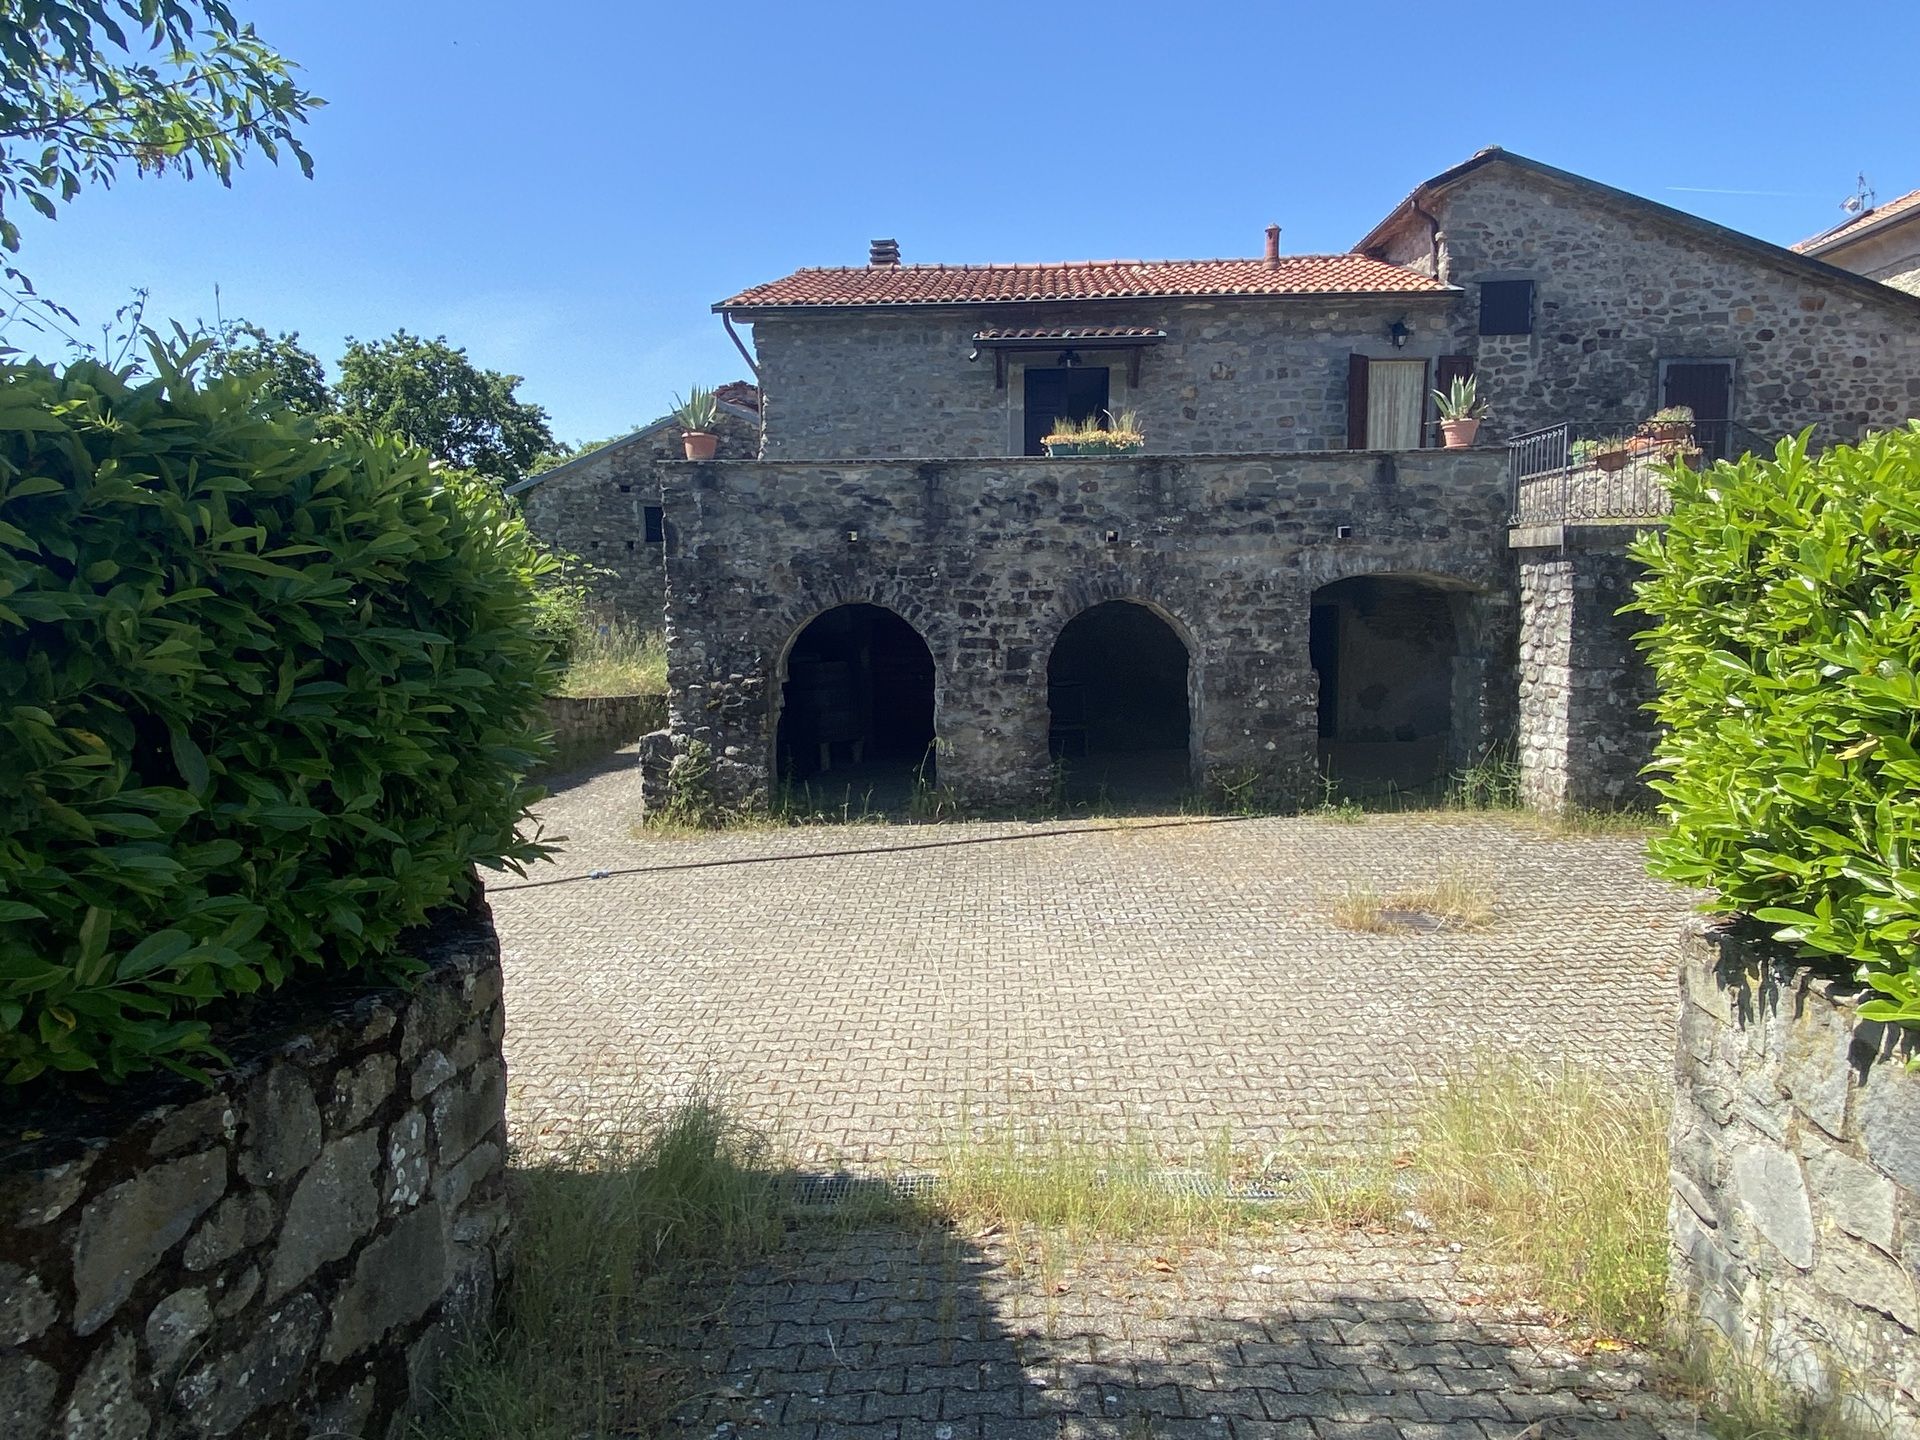 For sale cottage in quiet zone Filattiera Toscana